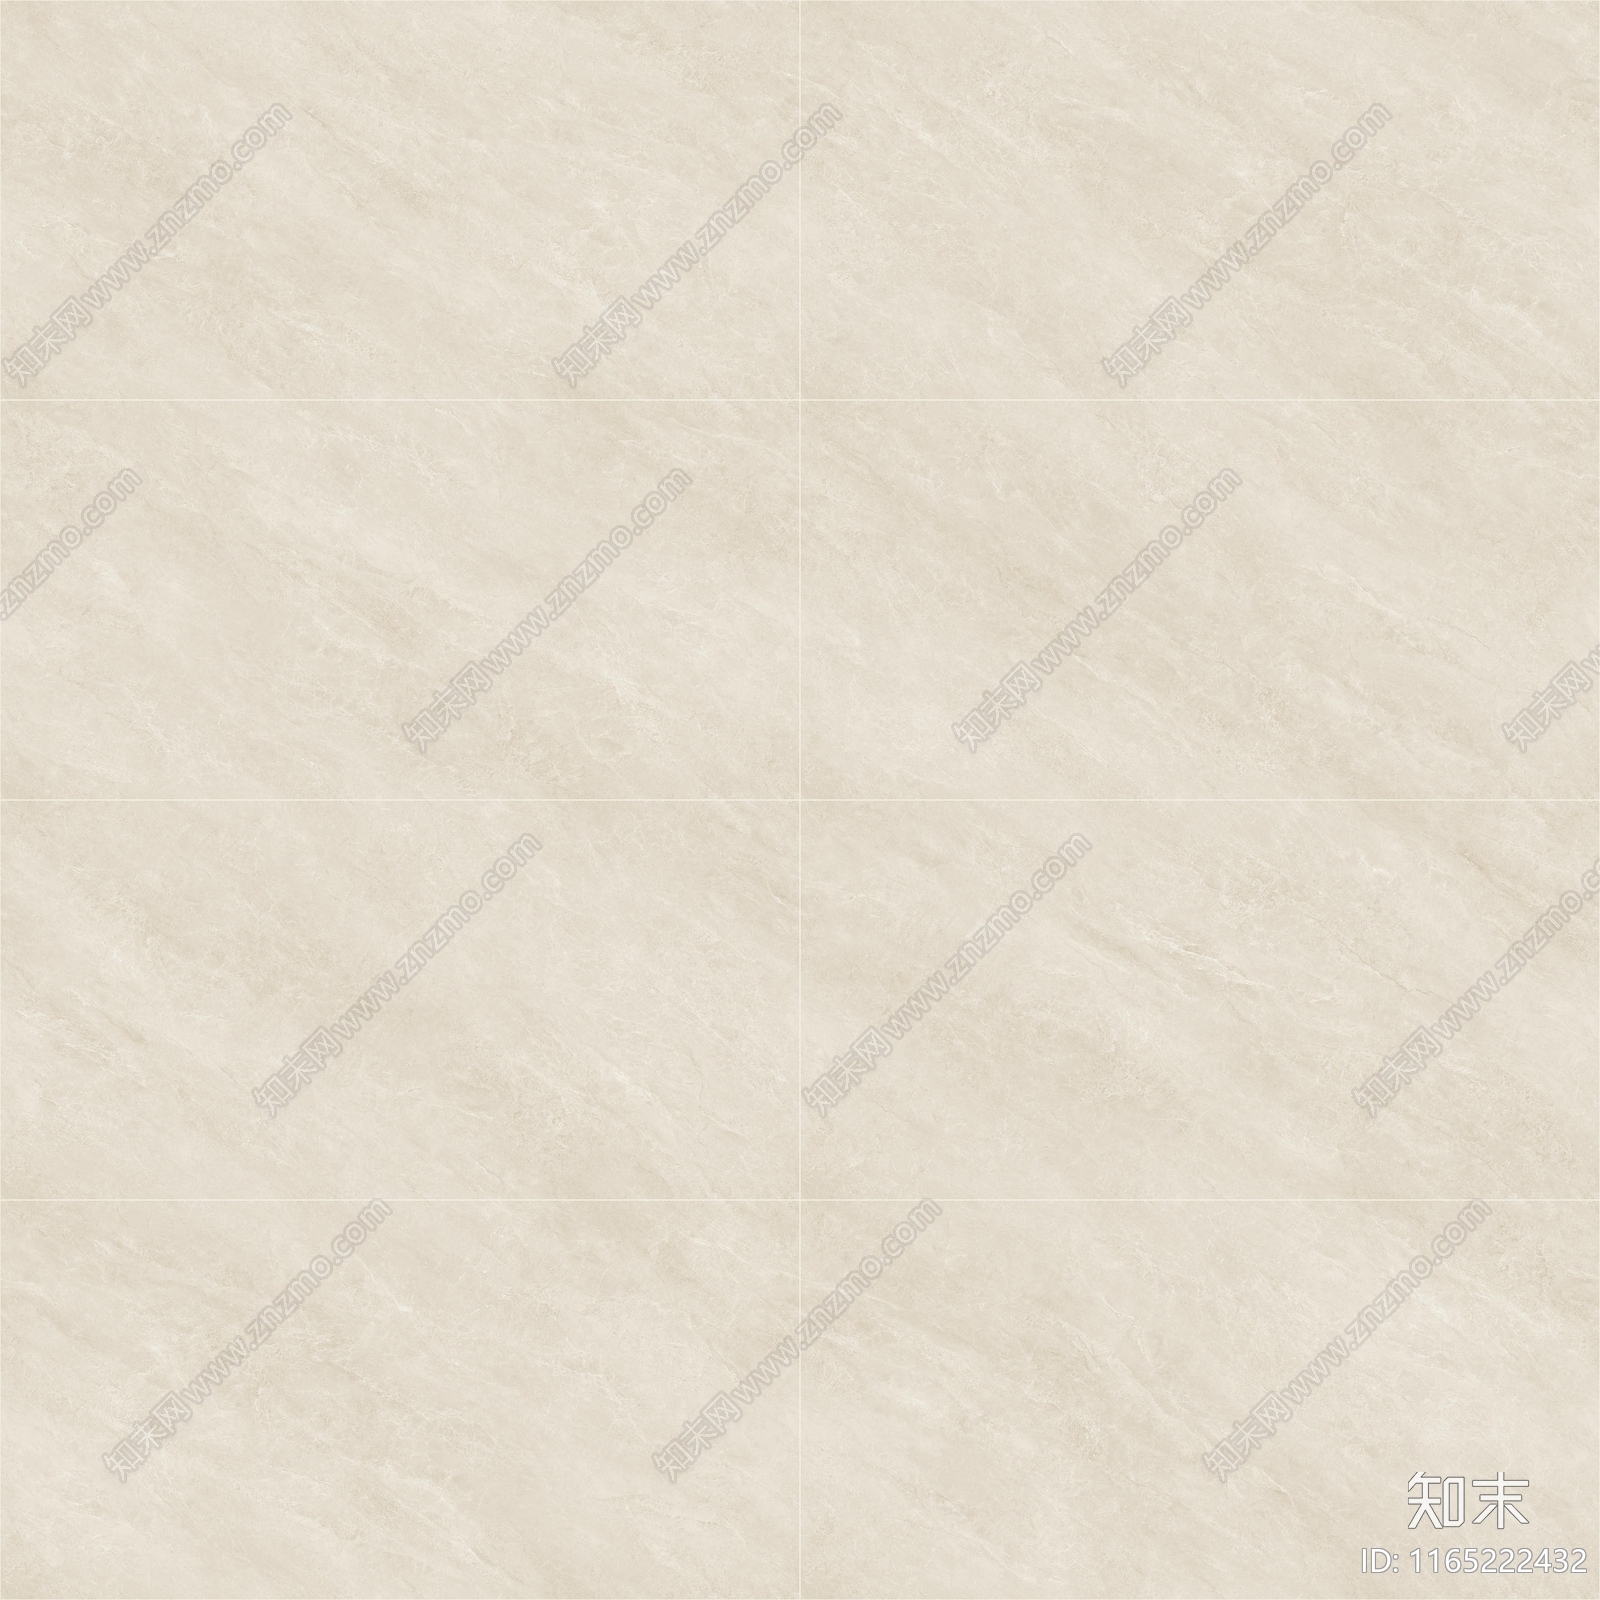 现代奶油瓷砖贴图下载【ID:1165222432】